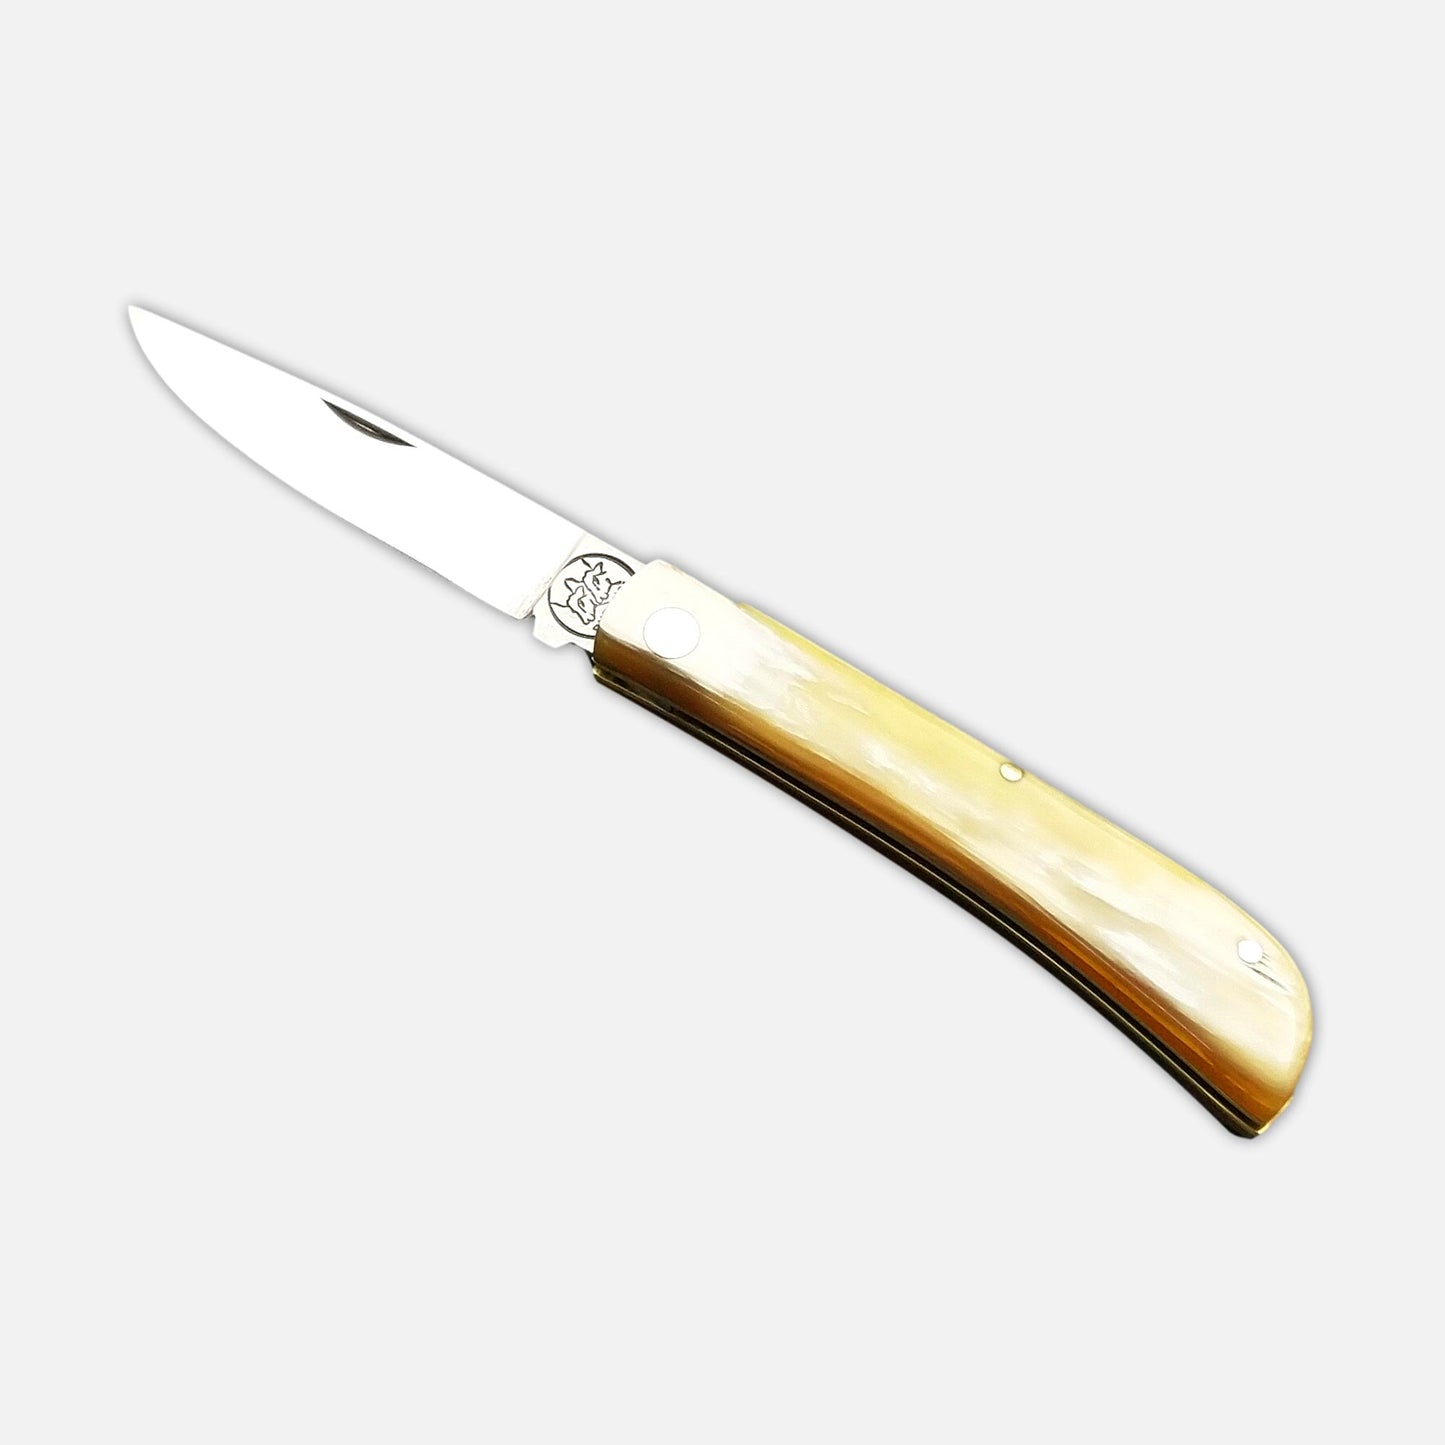 
                  
                    FOLDING POCKET KNIFE 230 IN STAINLESS STEEL Böhler N690 - HONEY HORN HANDLE
                  
                